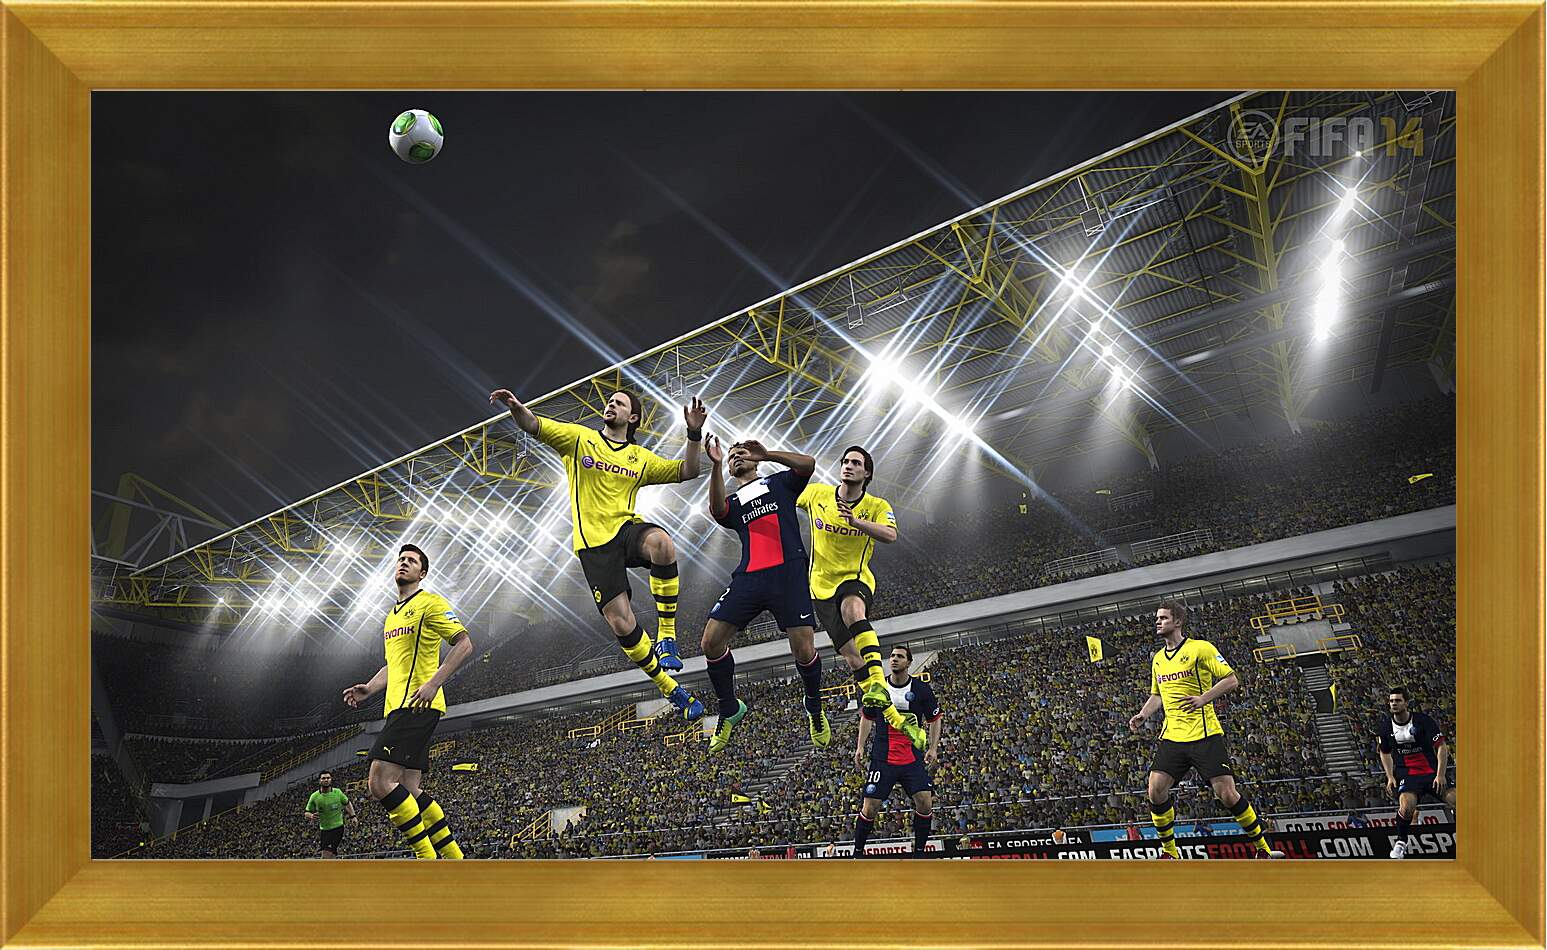 Картина в раме - FIFA 14
